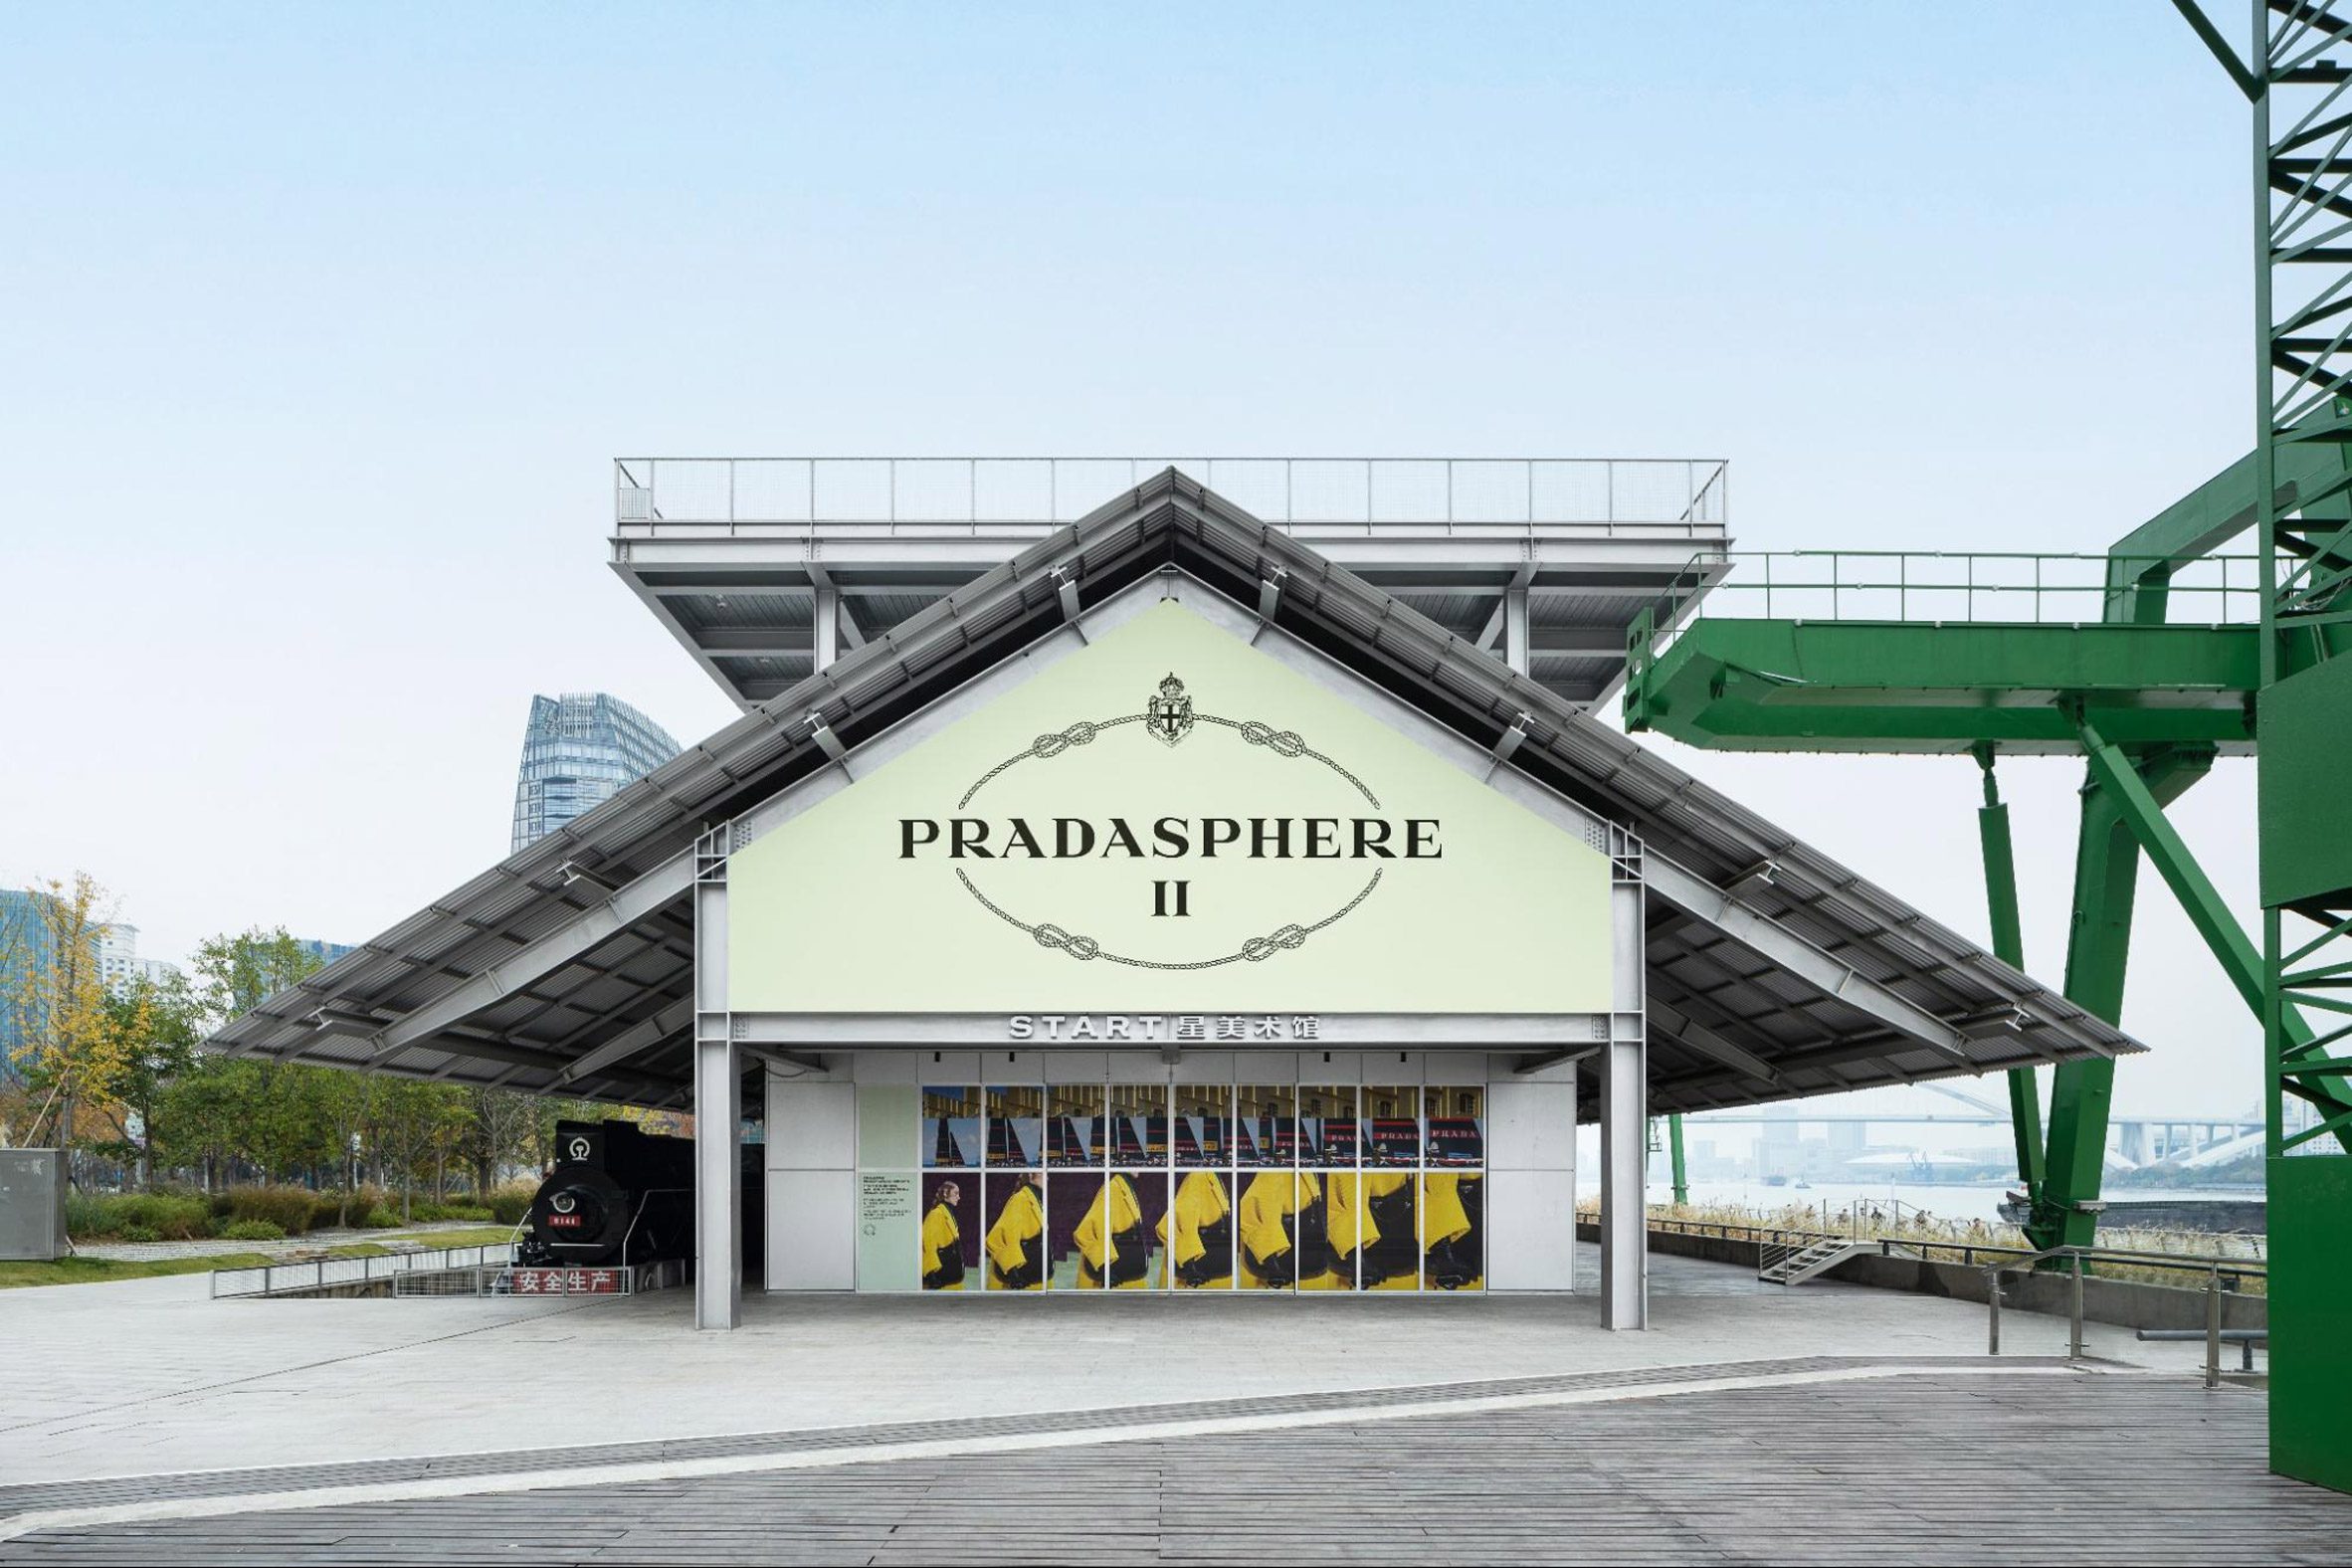 Photo of the Pradasphere II exhibition venue